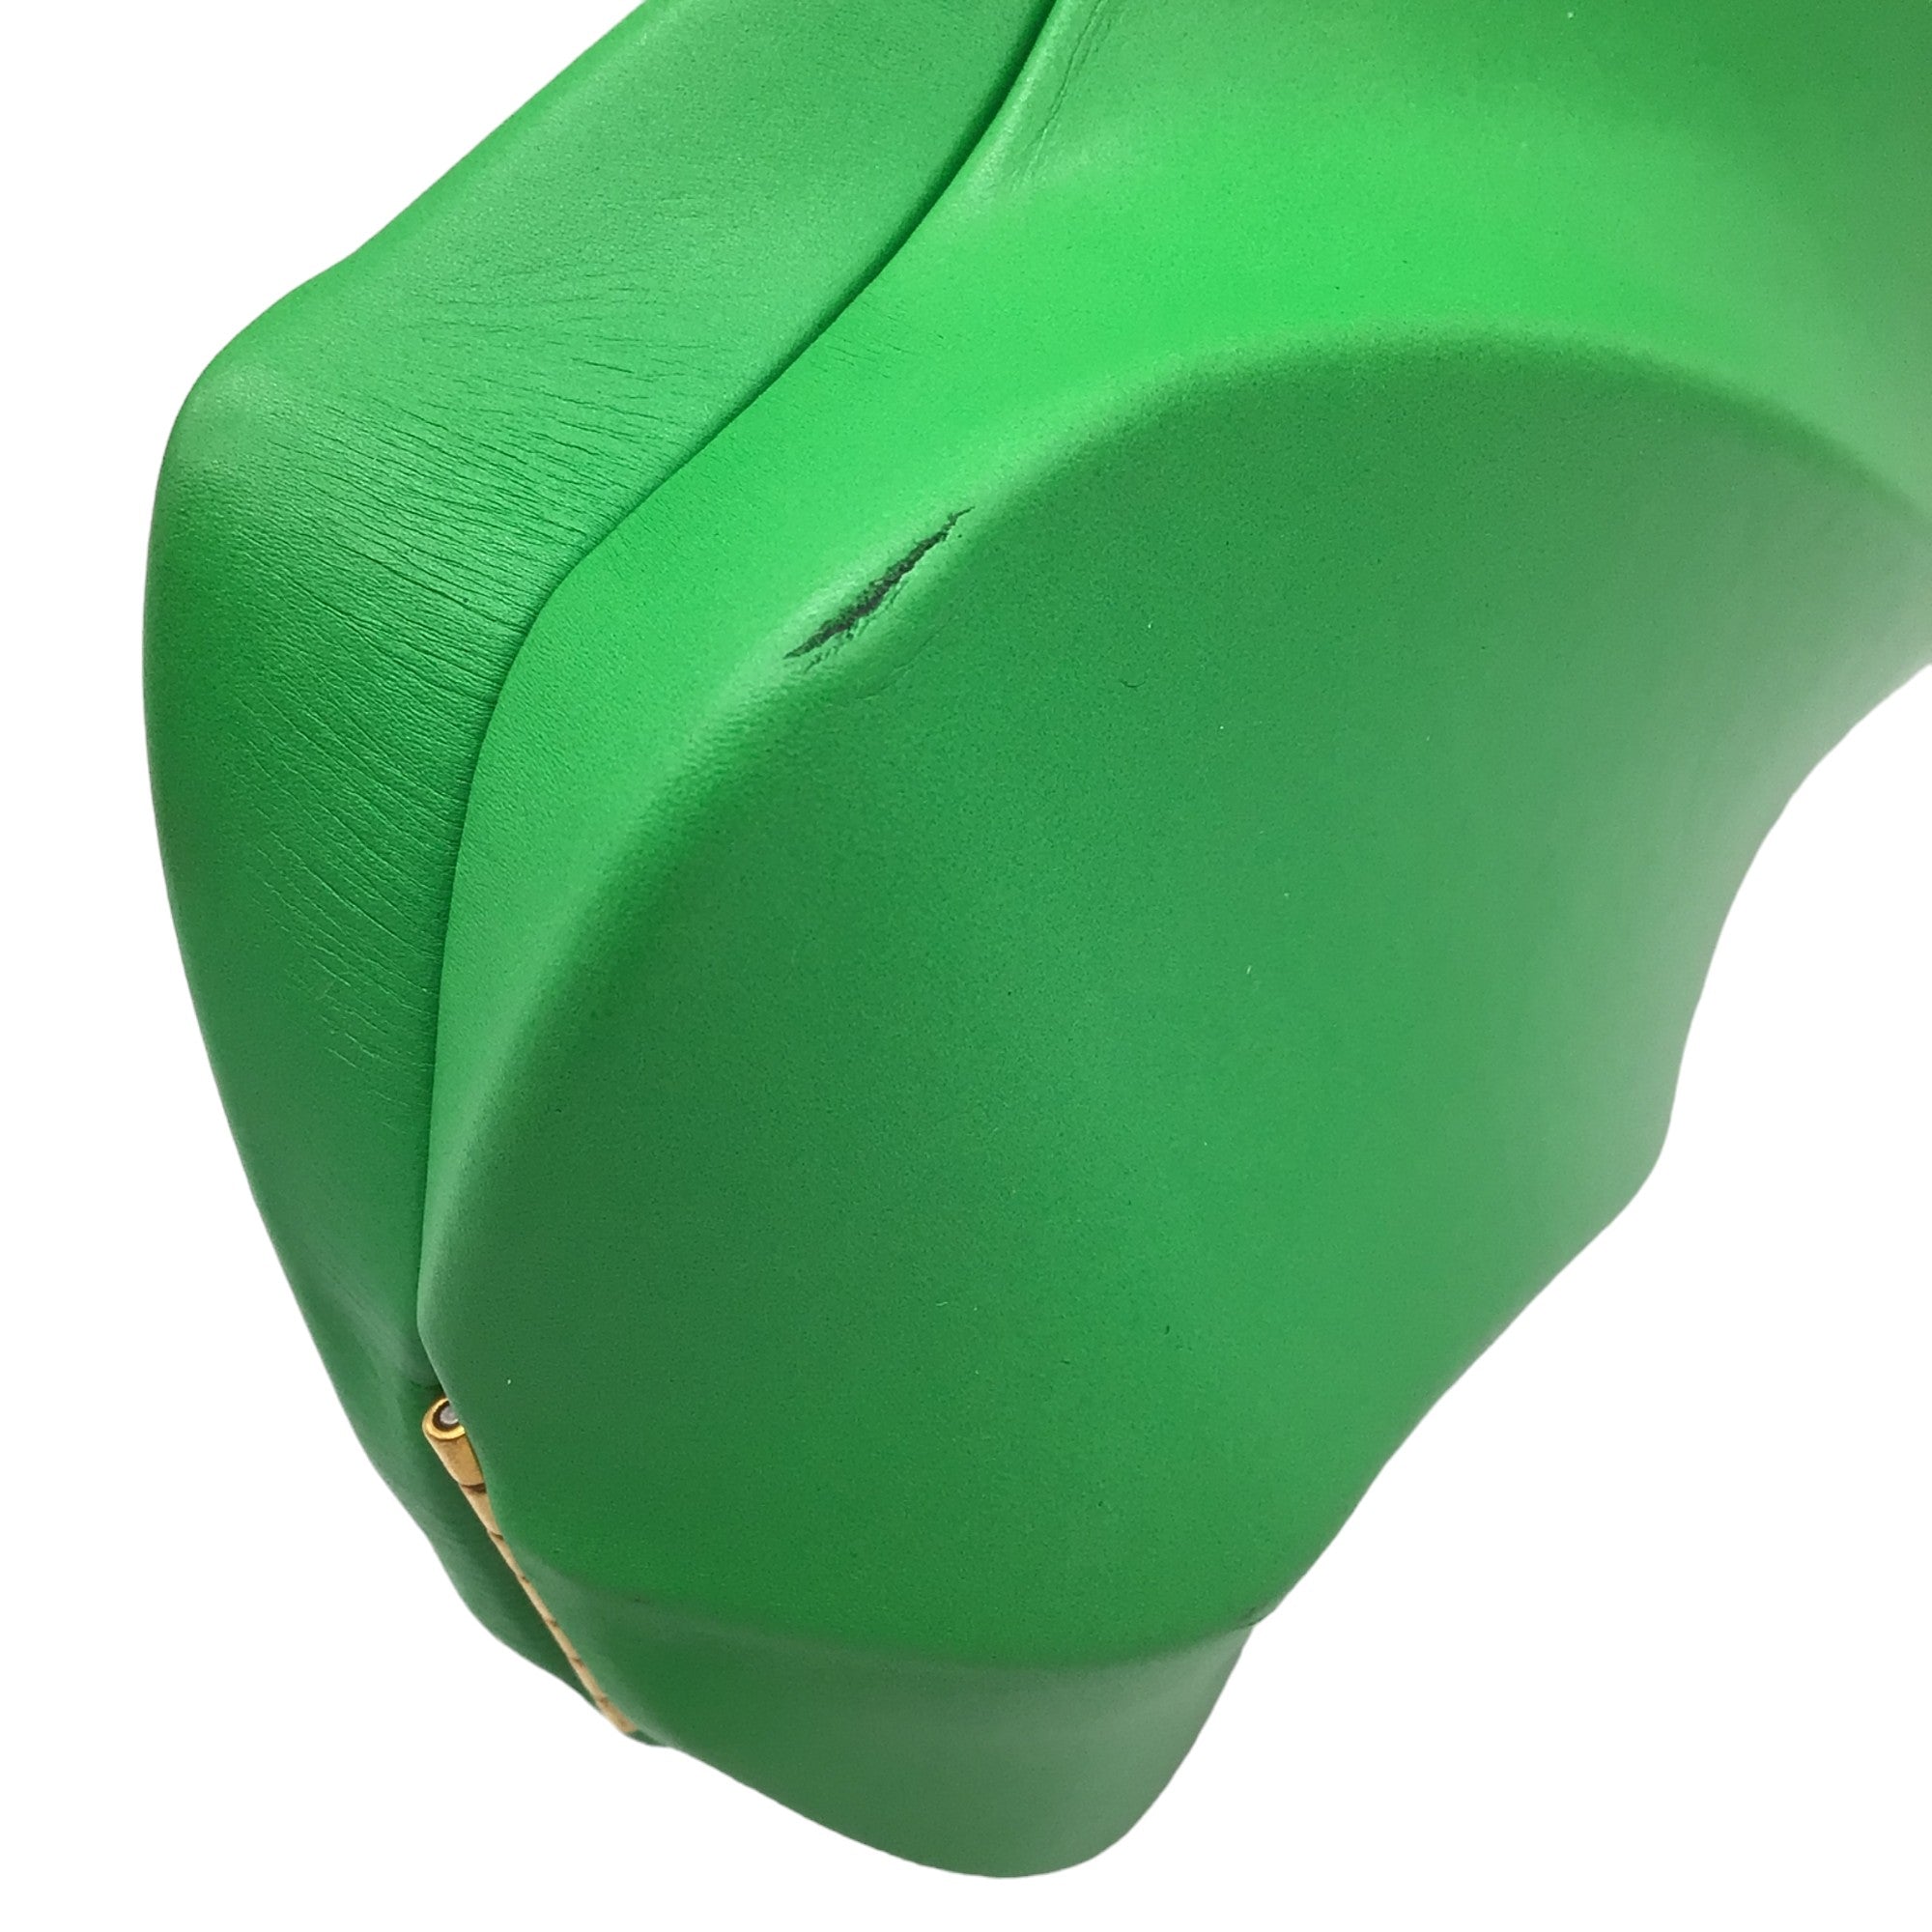 Bottega Veneta Green Leather Whirl Clutch Bag